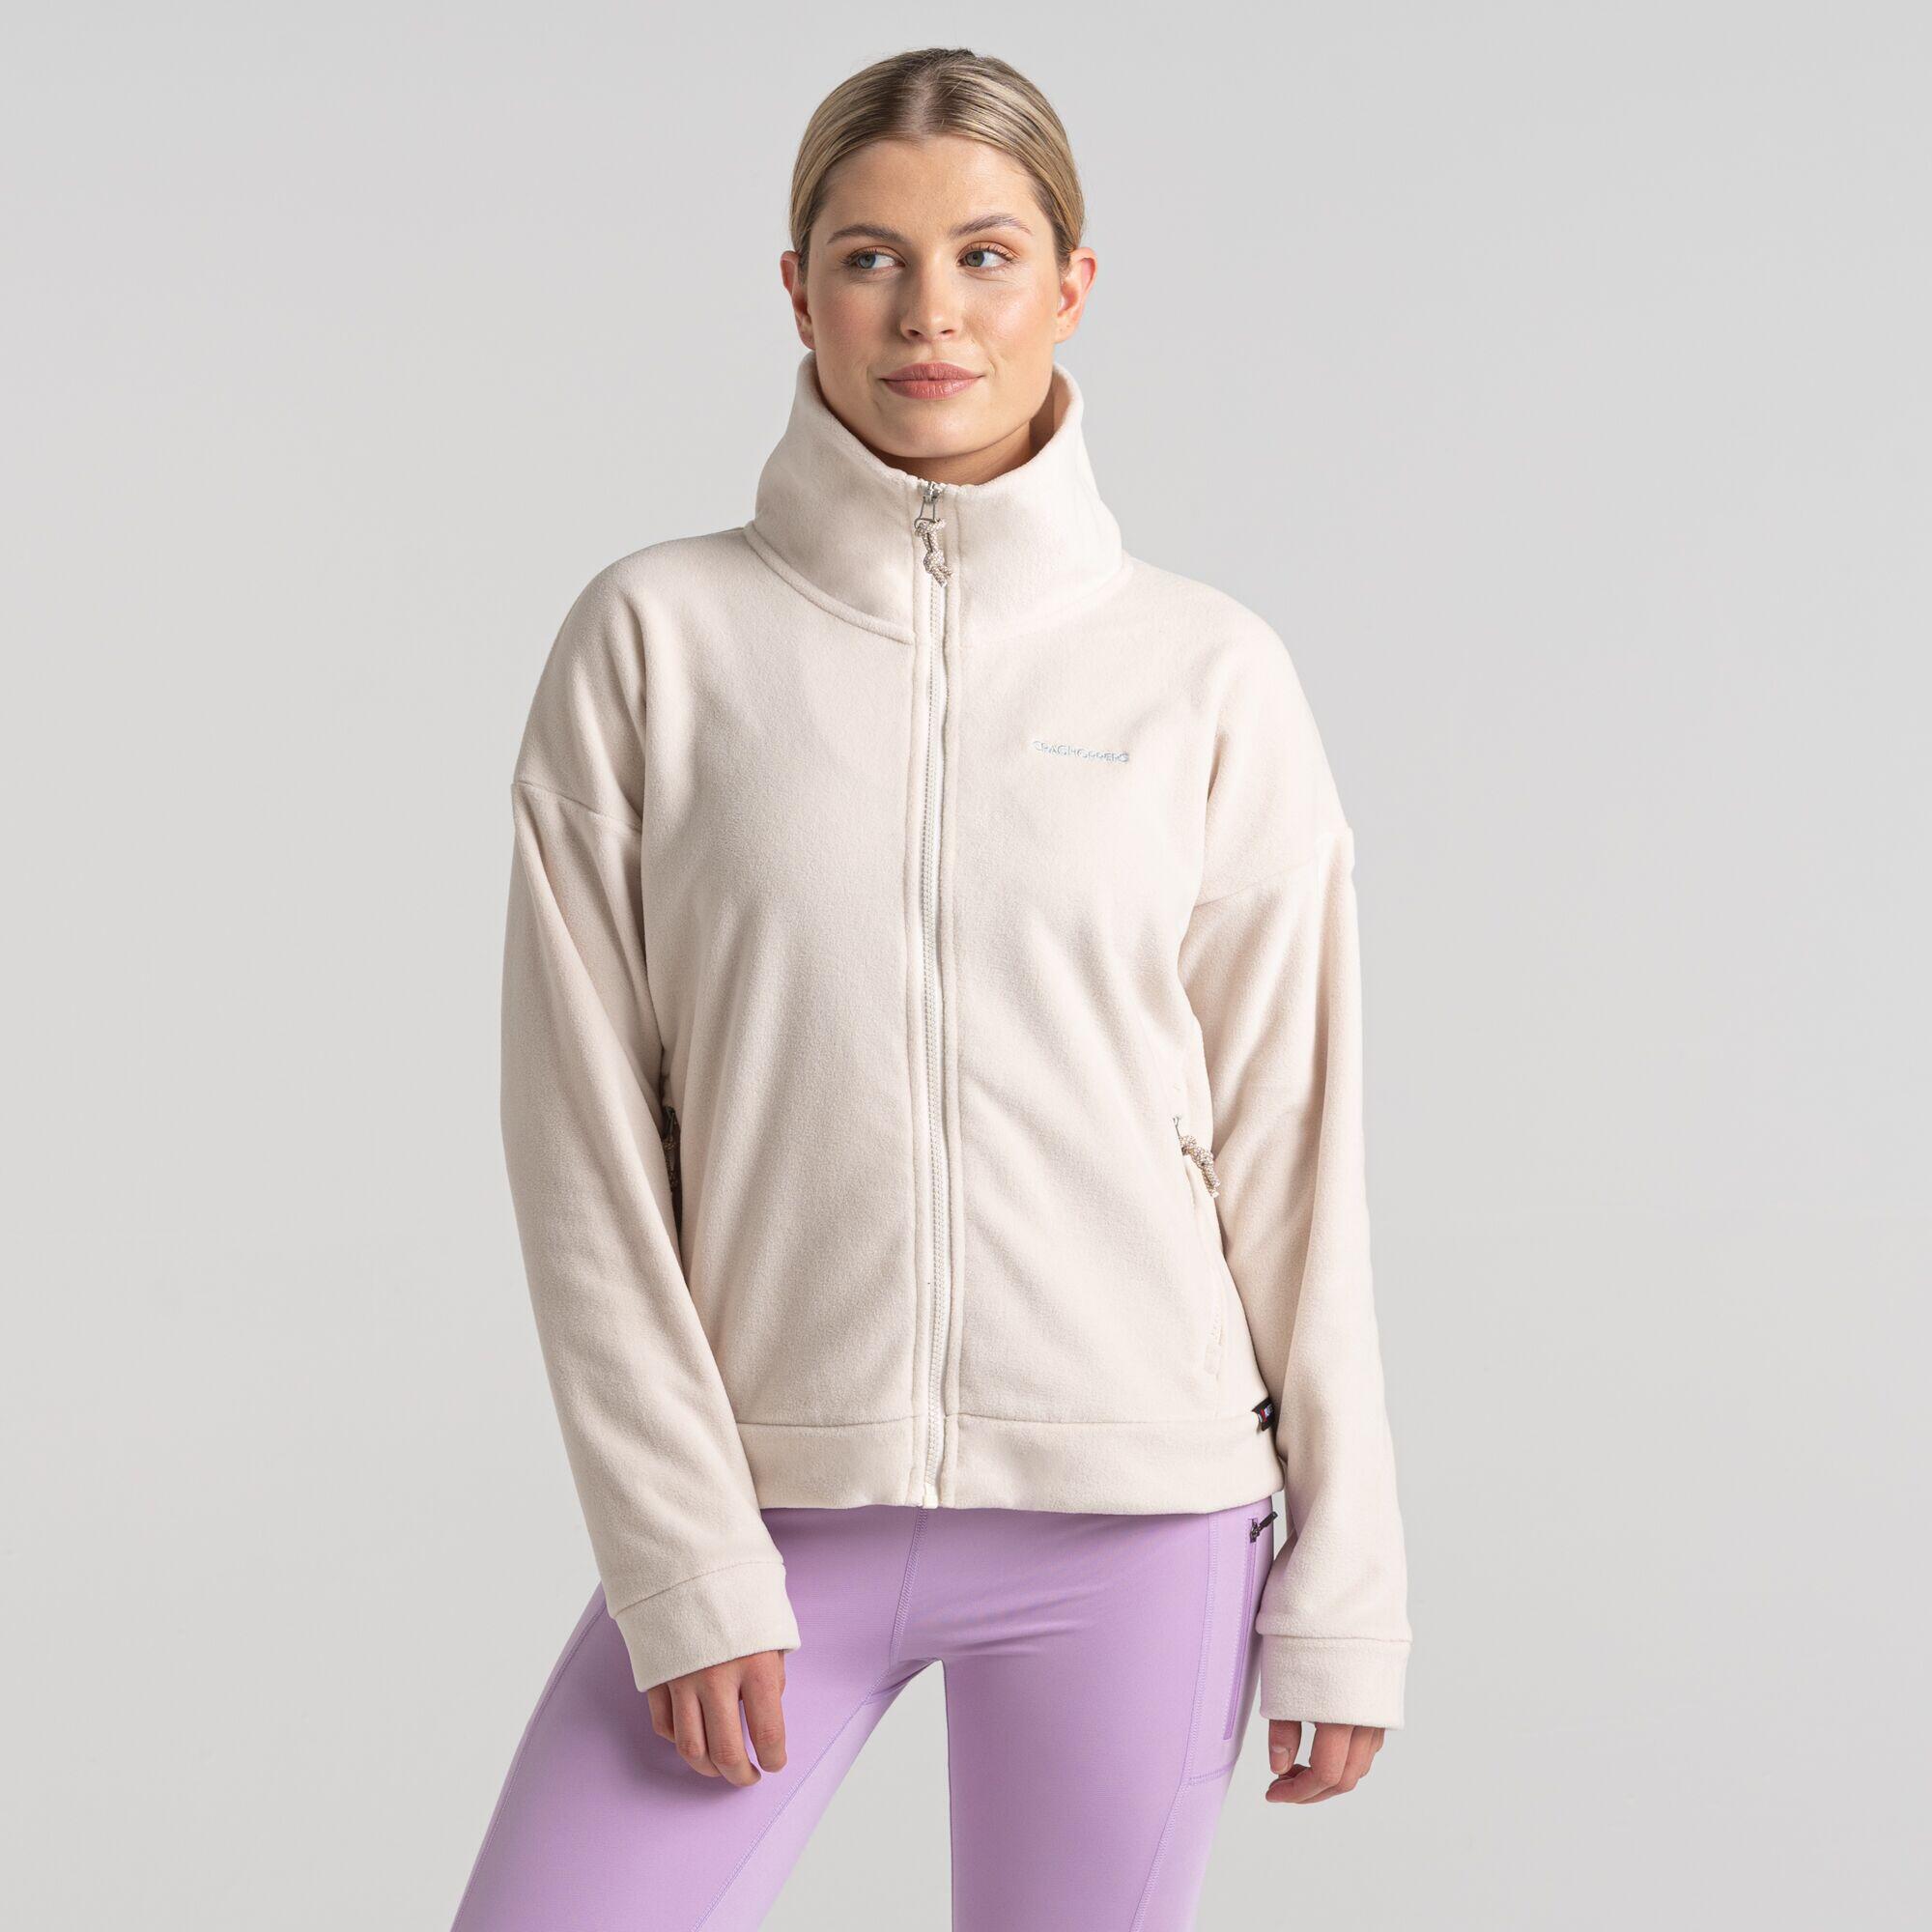 Women's Polartec Caprice Full Zip Fleece 5/5